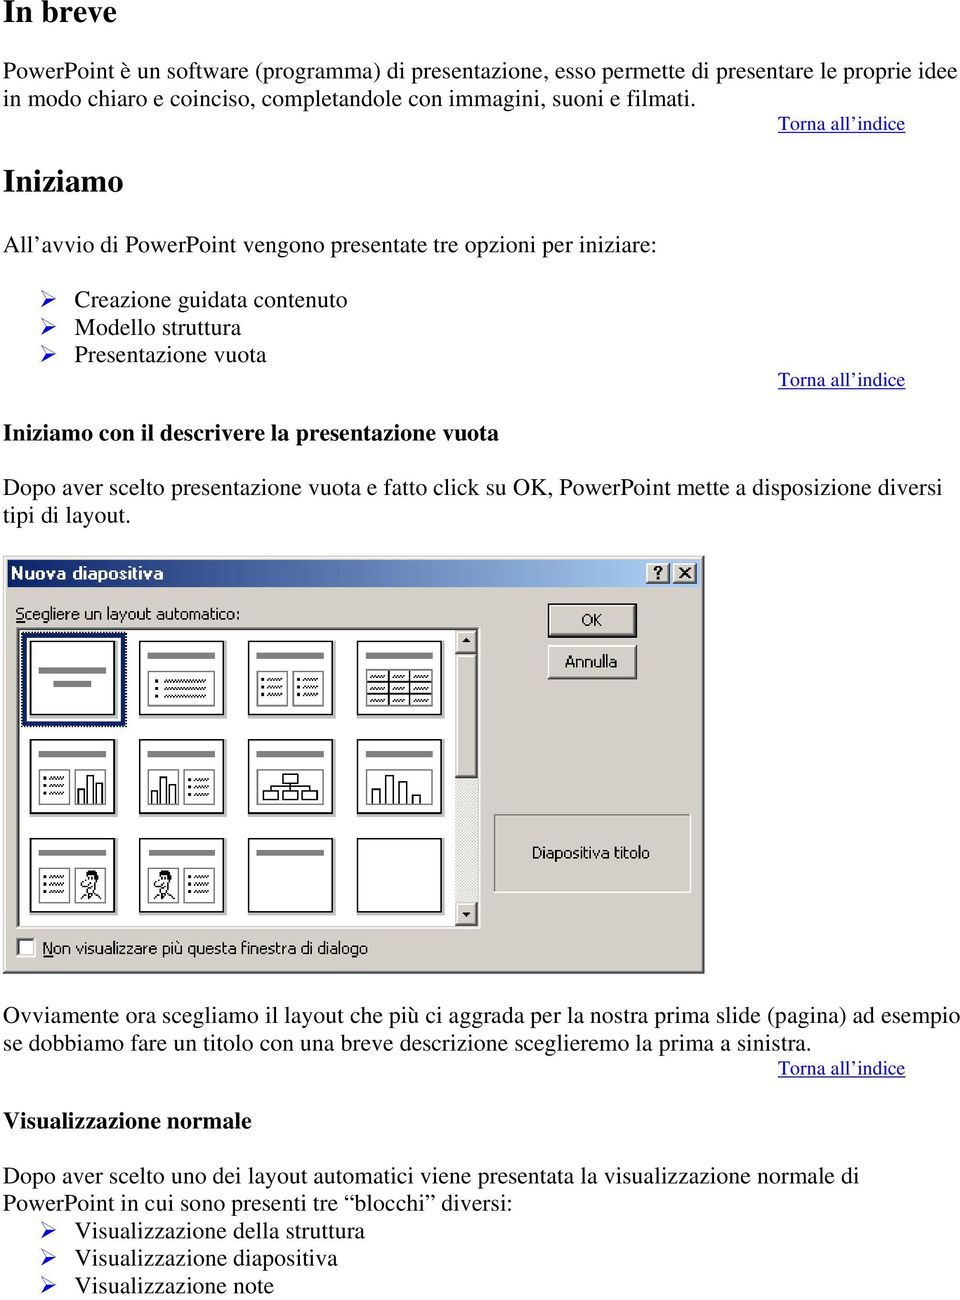 aver scelto presentazione vuota e fatto click su OK, PowerPoint mette a disposizione diversi tipi di layout.